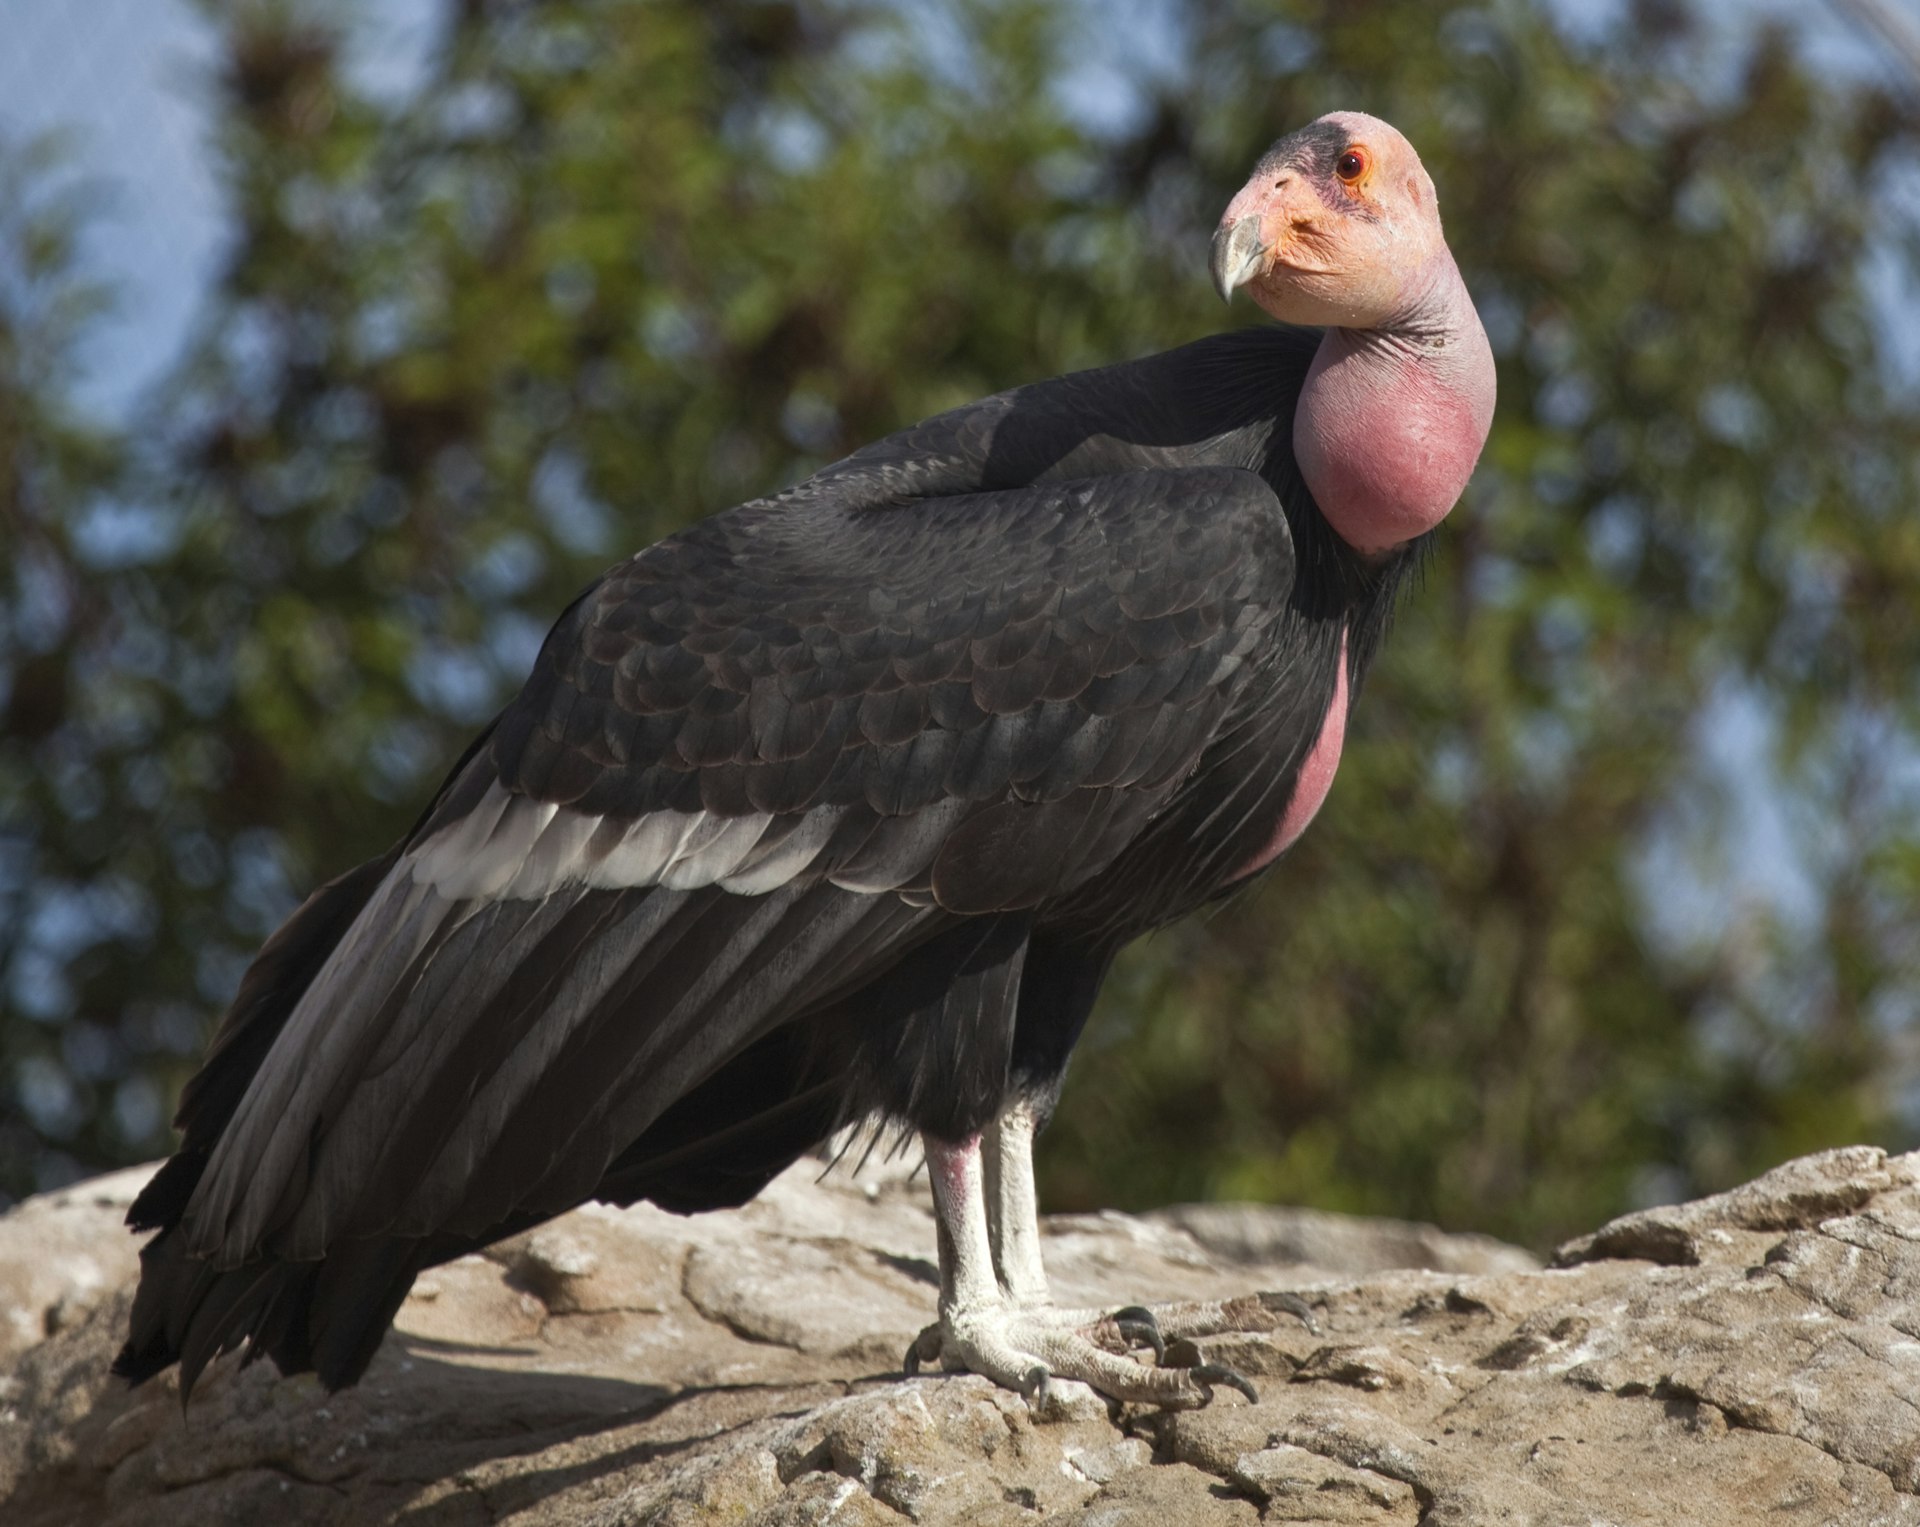 A California Condor vulture up close